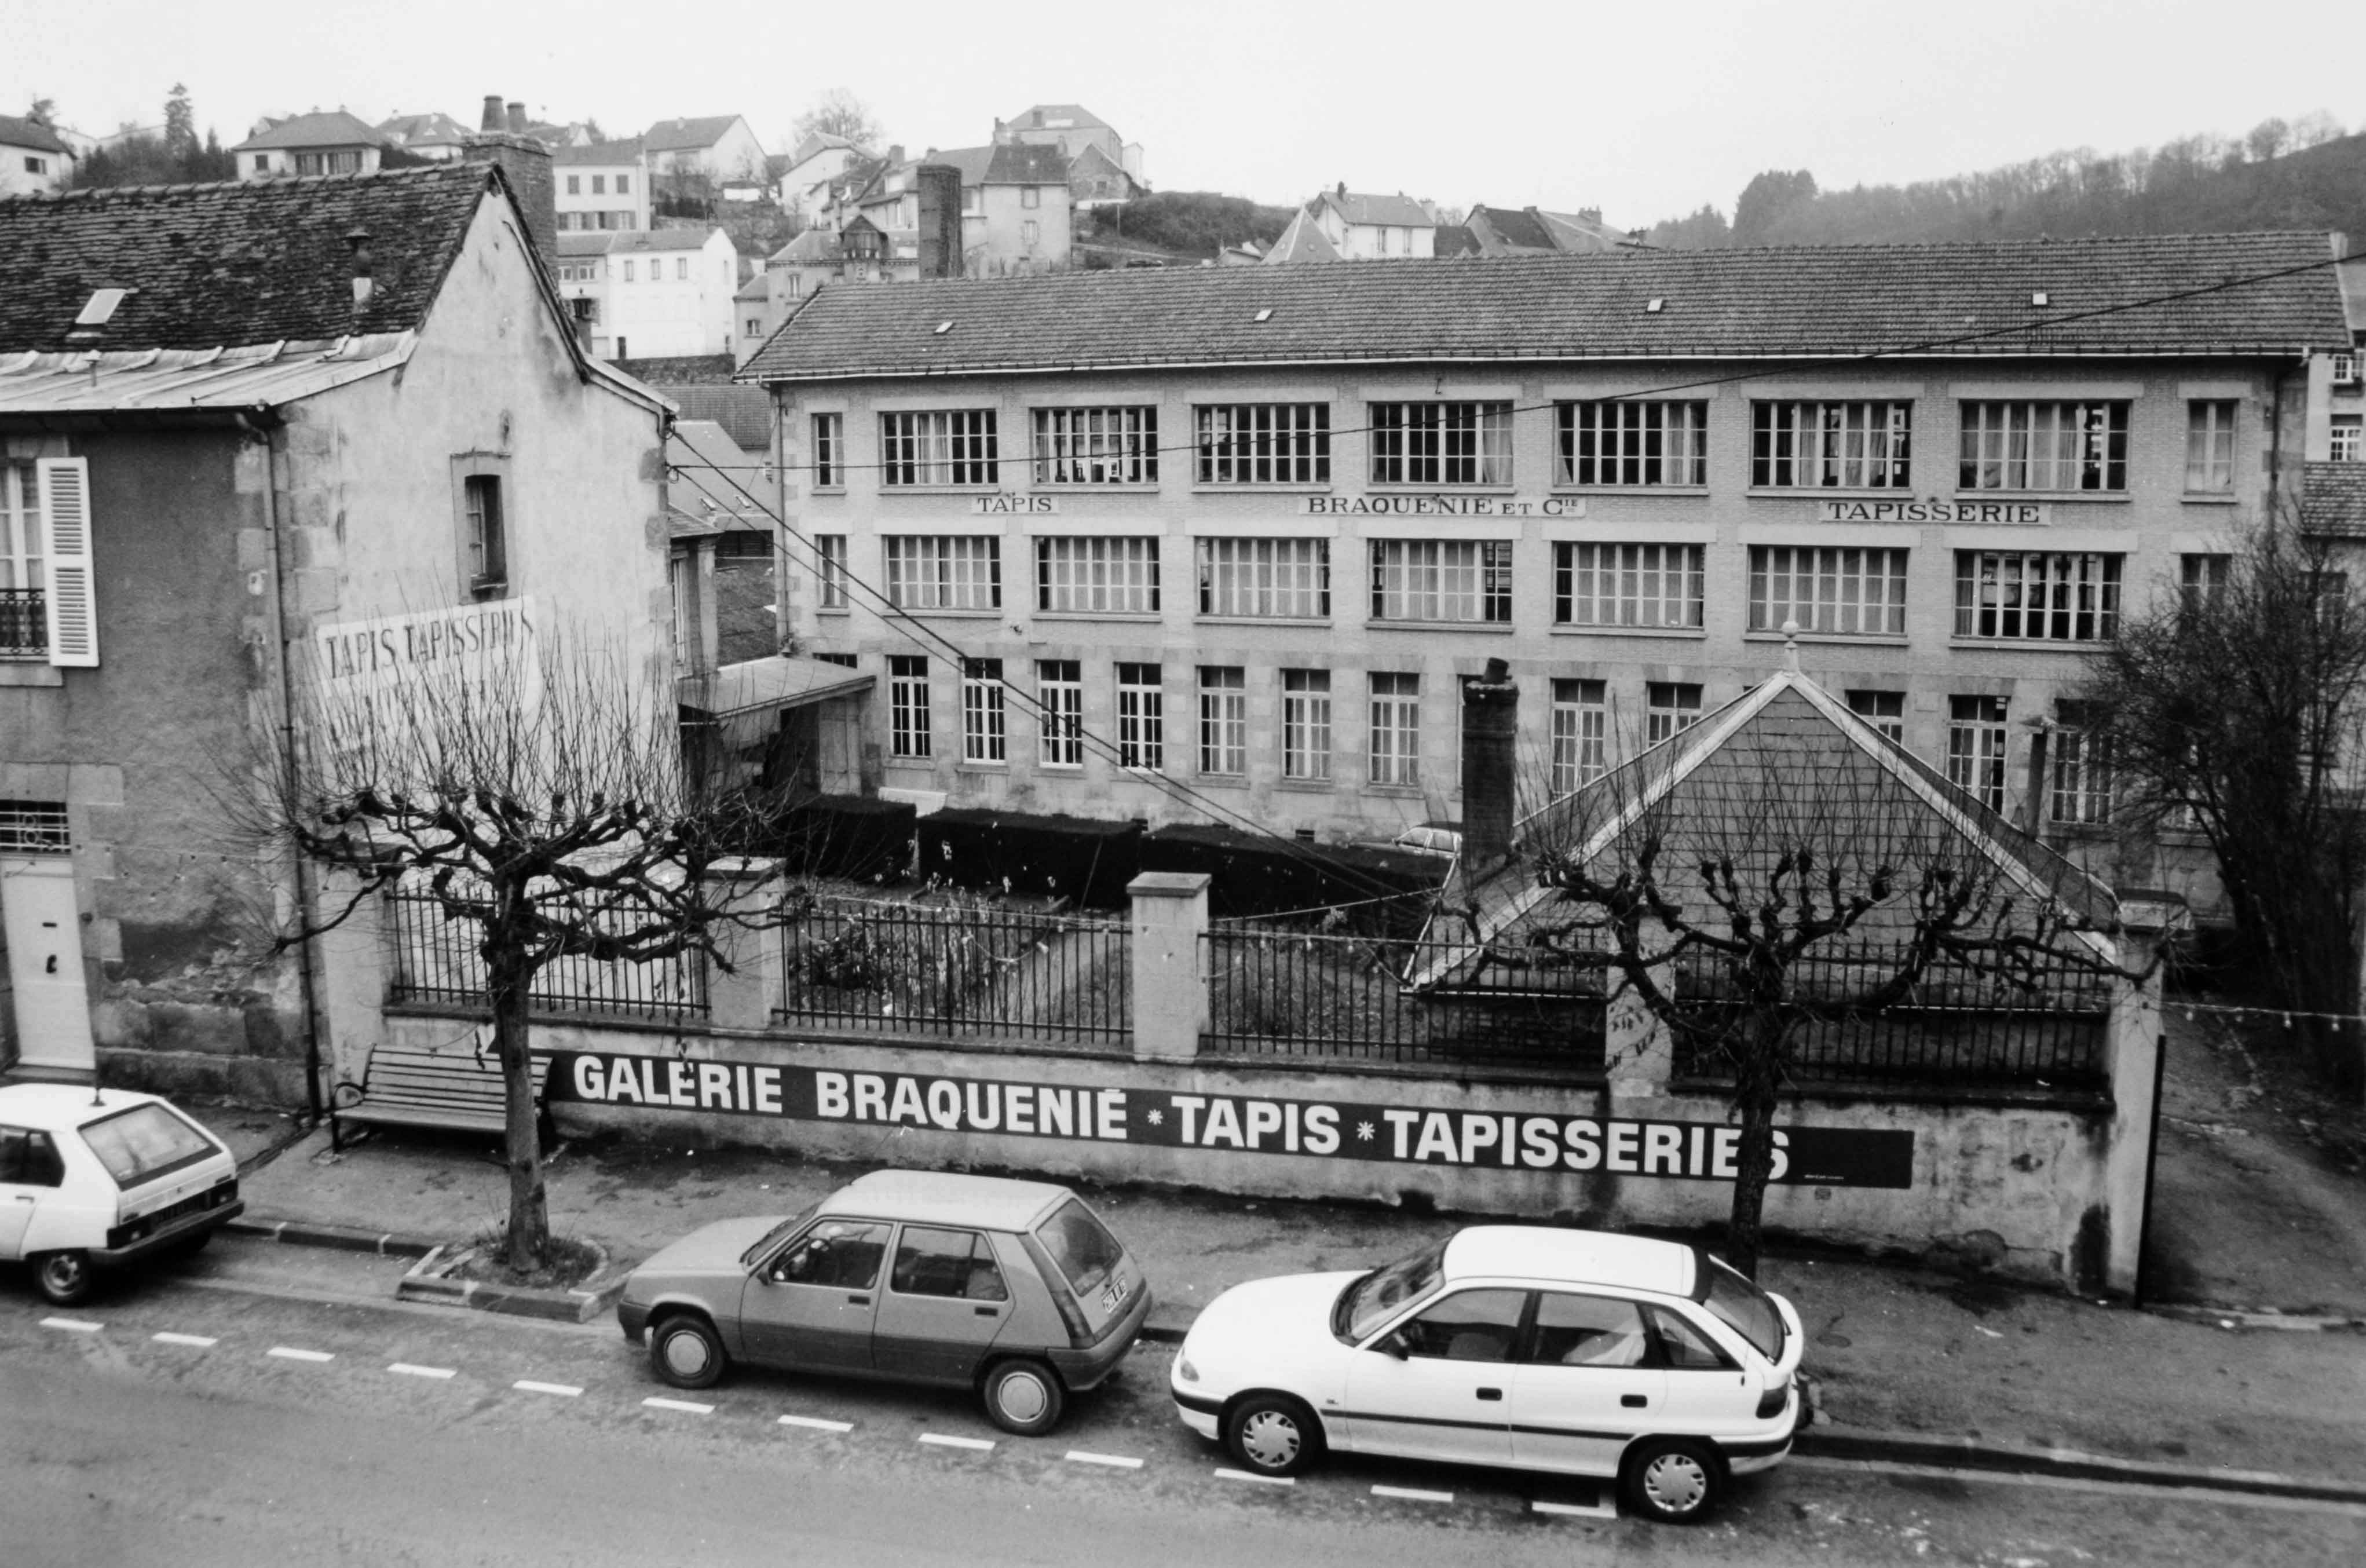 L'entrée de la manufacture, sur l'avenue de la République et l'élévation sud du bâtiment des ateliers de tissage (reportage photographique de L. Yeghicheyan, 1992, Aubusson, Musée départemental de la Tapisserie)